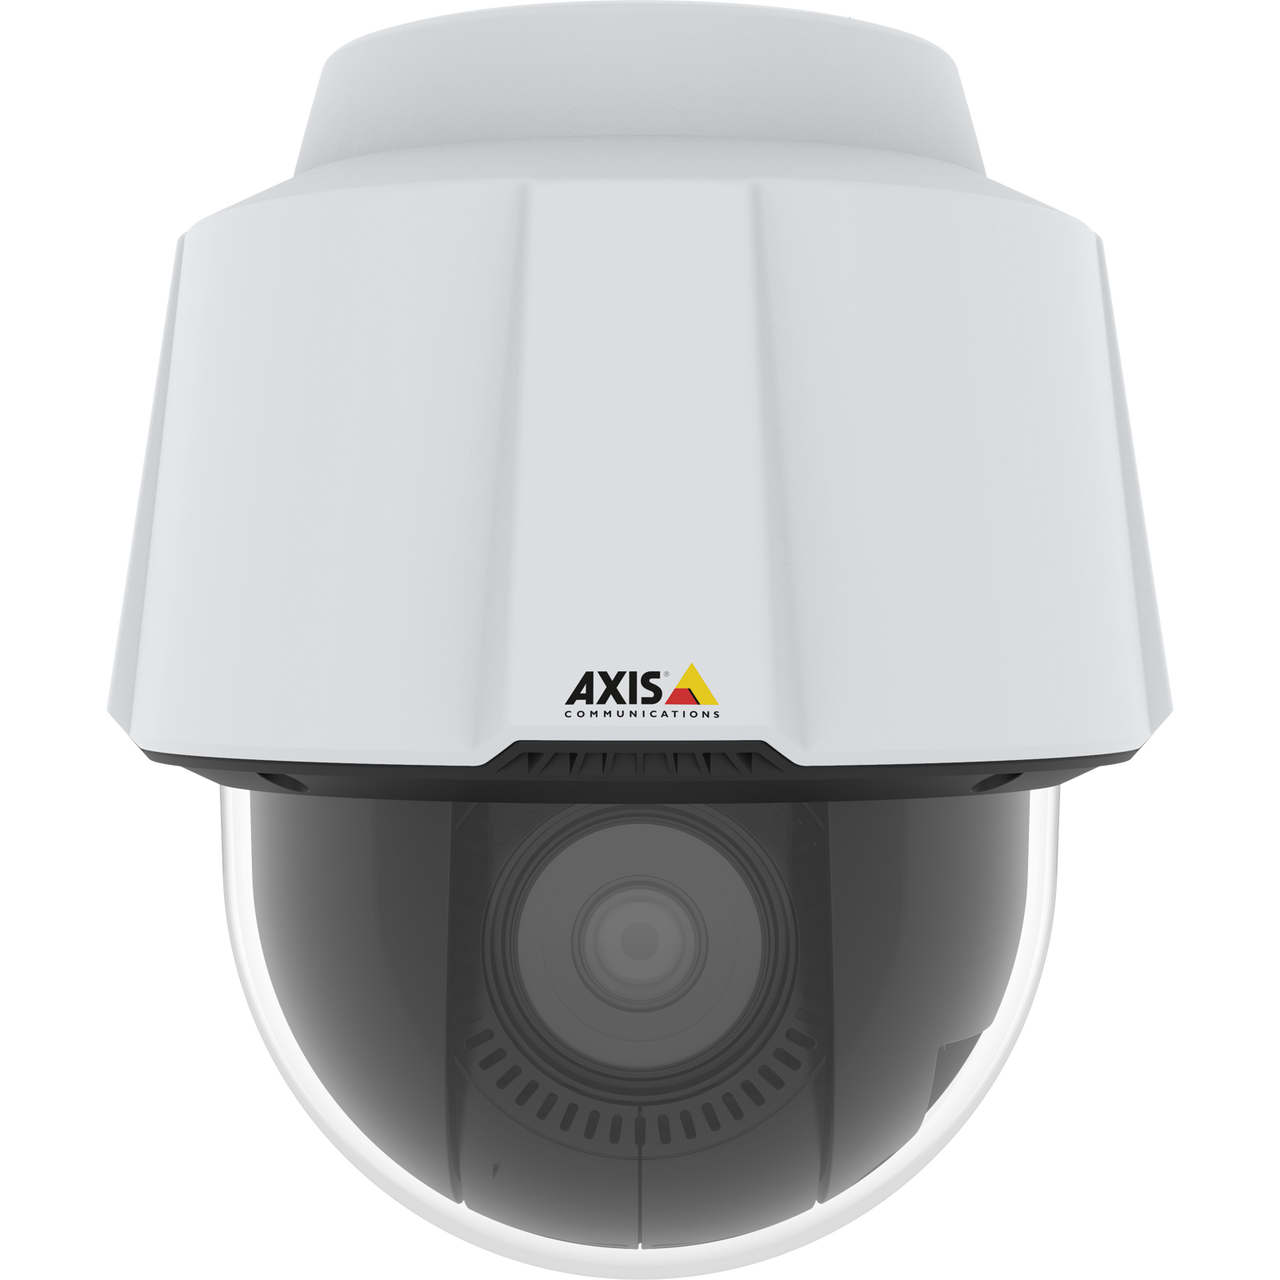 AXIS P5655-E 60HZ Cost-effective PTZ for versatile surveillance